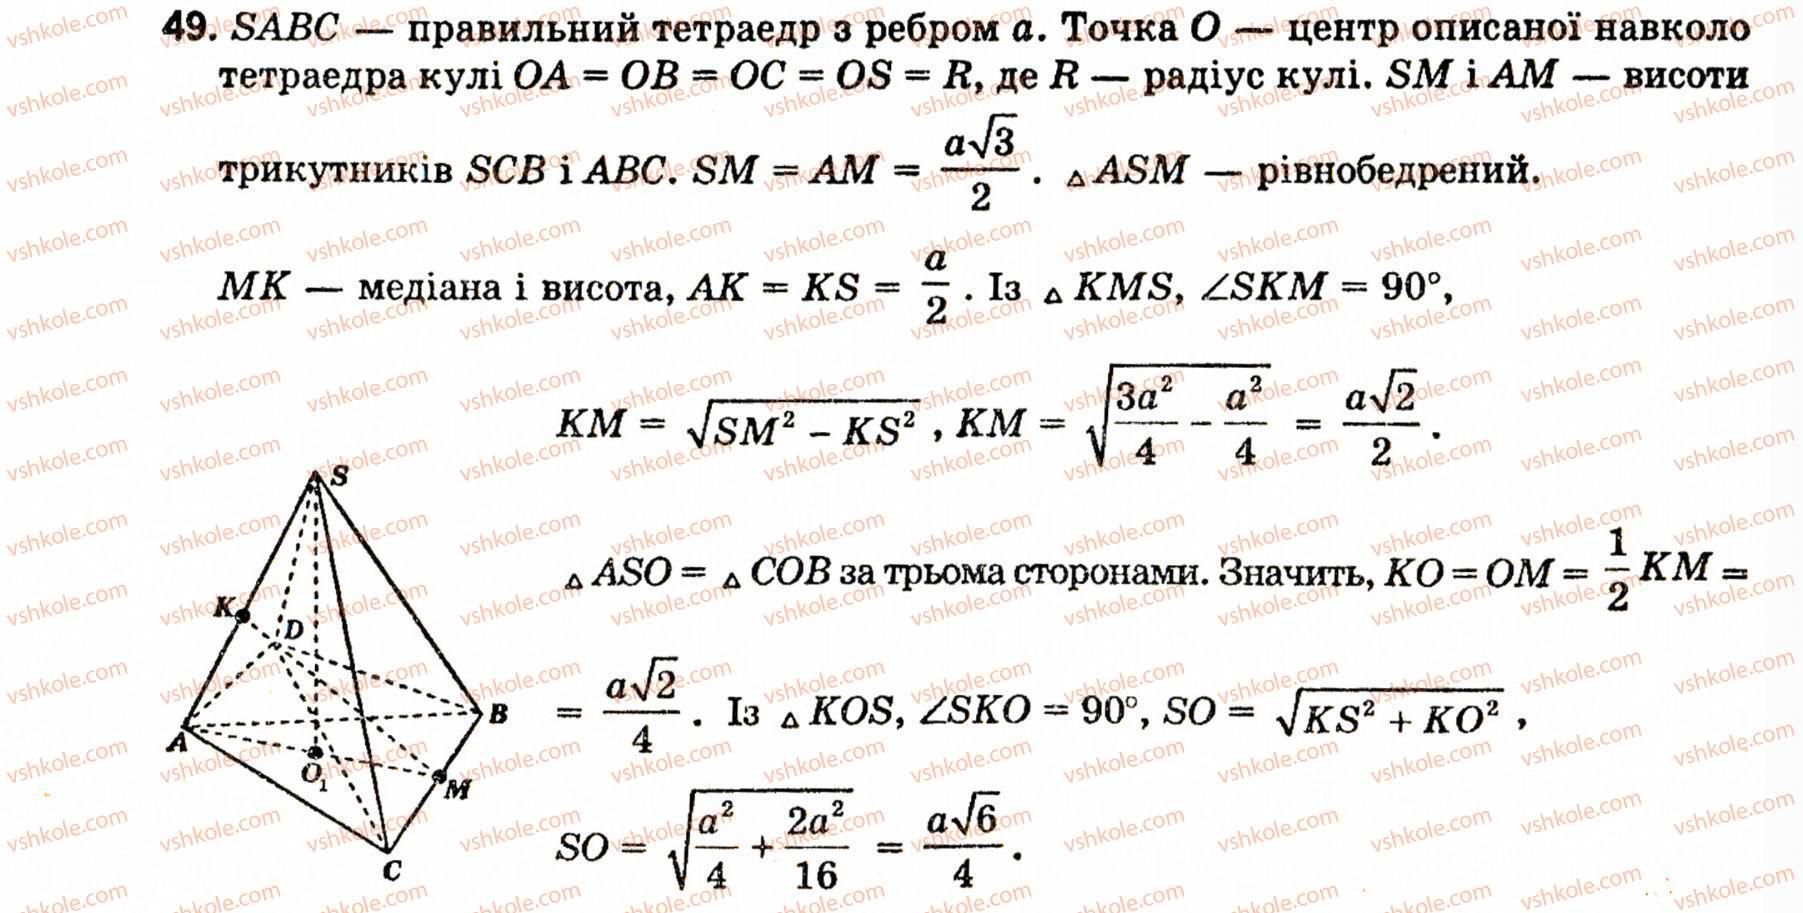 10-11-geometriya-ov-pogoryelov-49